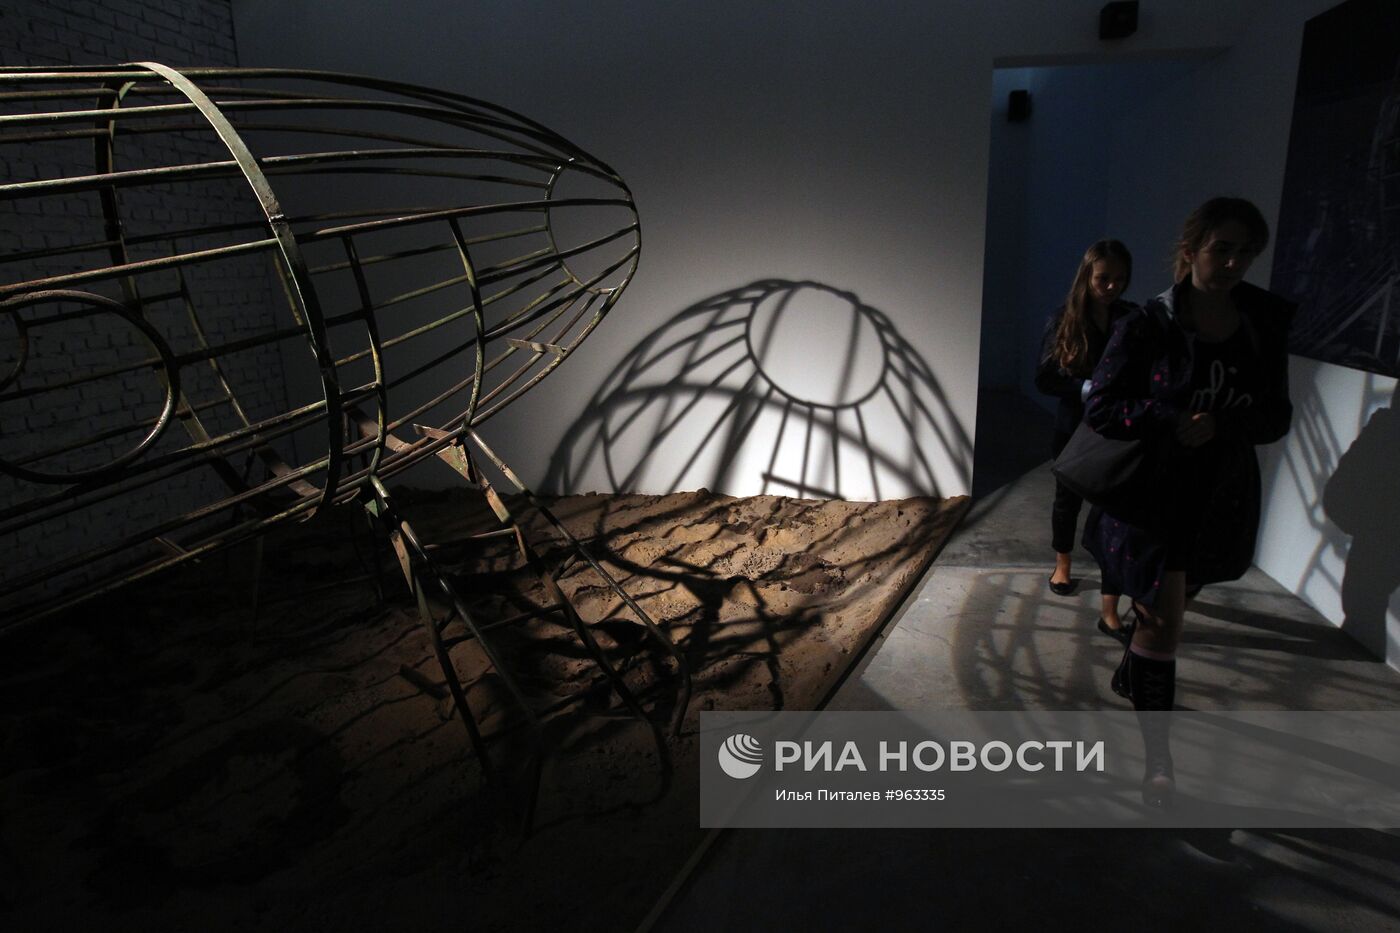 Московская биеннале современного искусства "Переписывая миры"